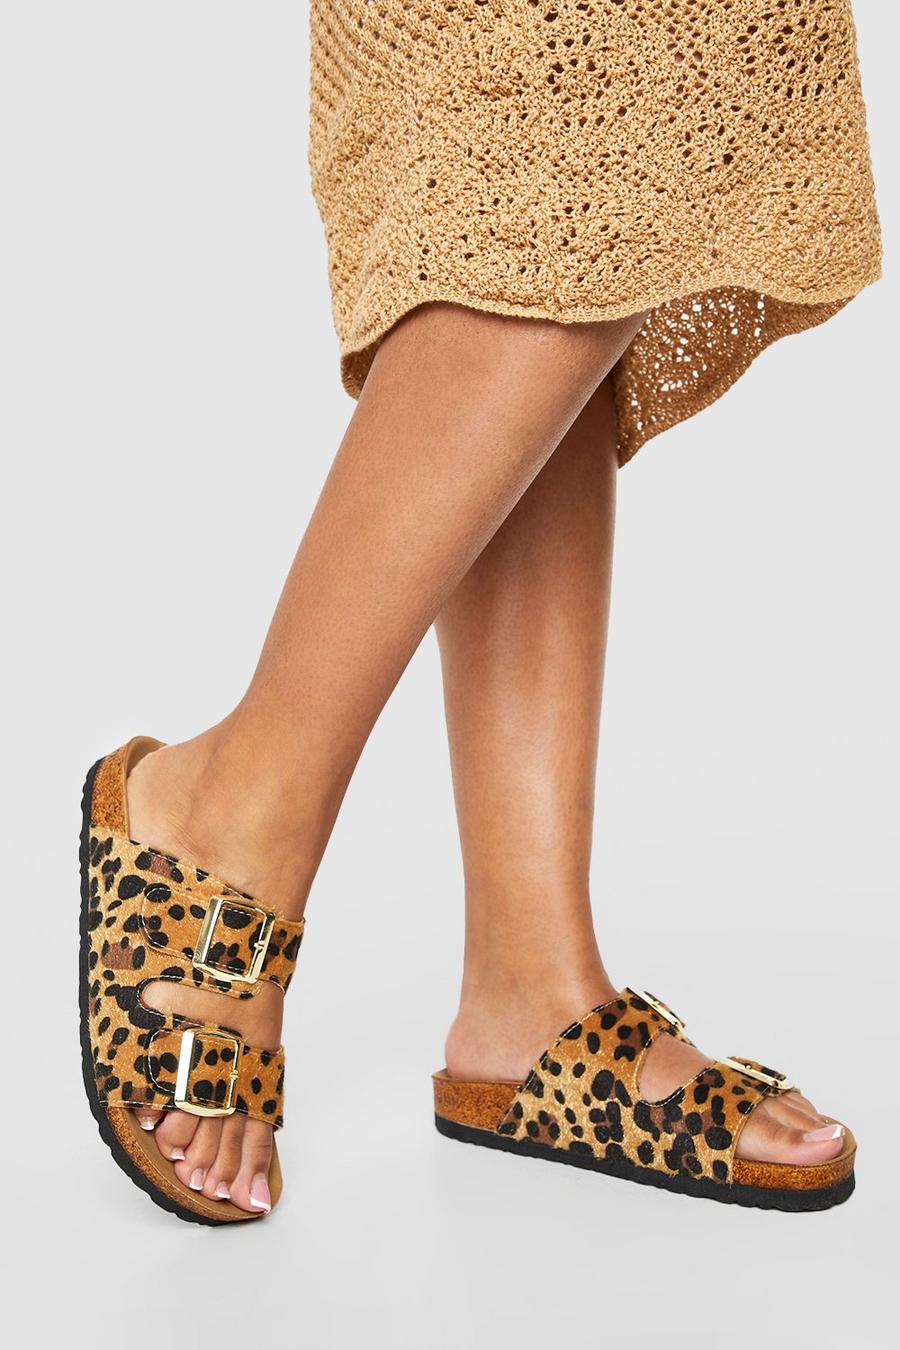 Sandalias de holgura ancha con plantilla blanda, hebilla doble y estampado de leopardo, Leopard image number 1